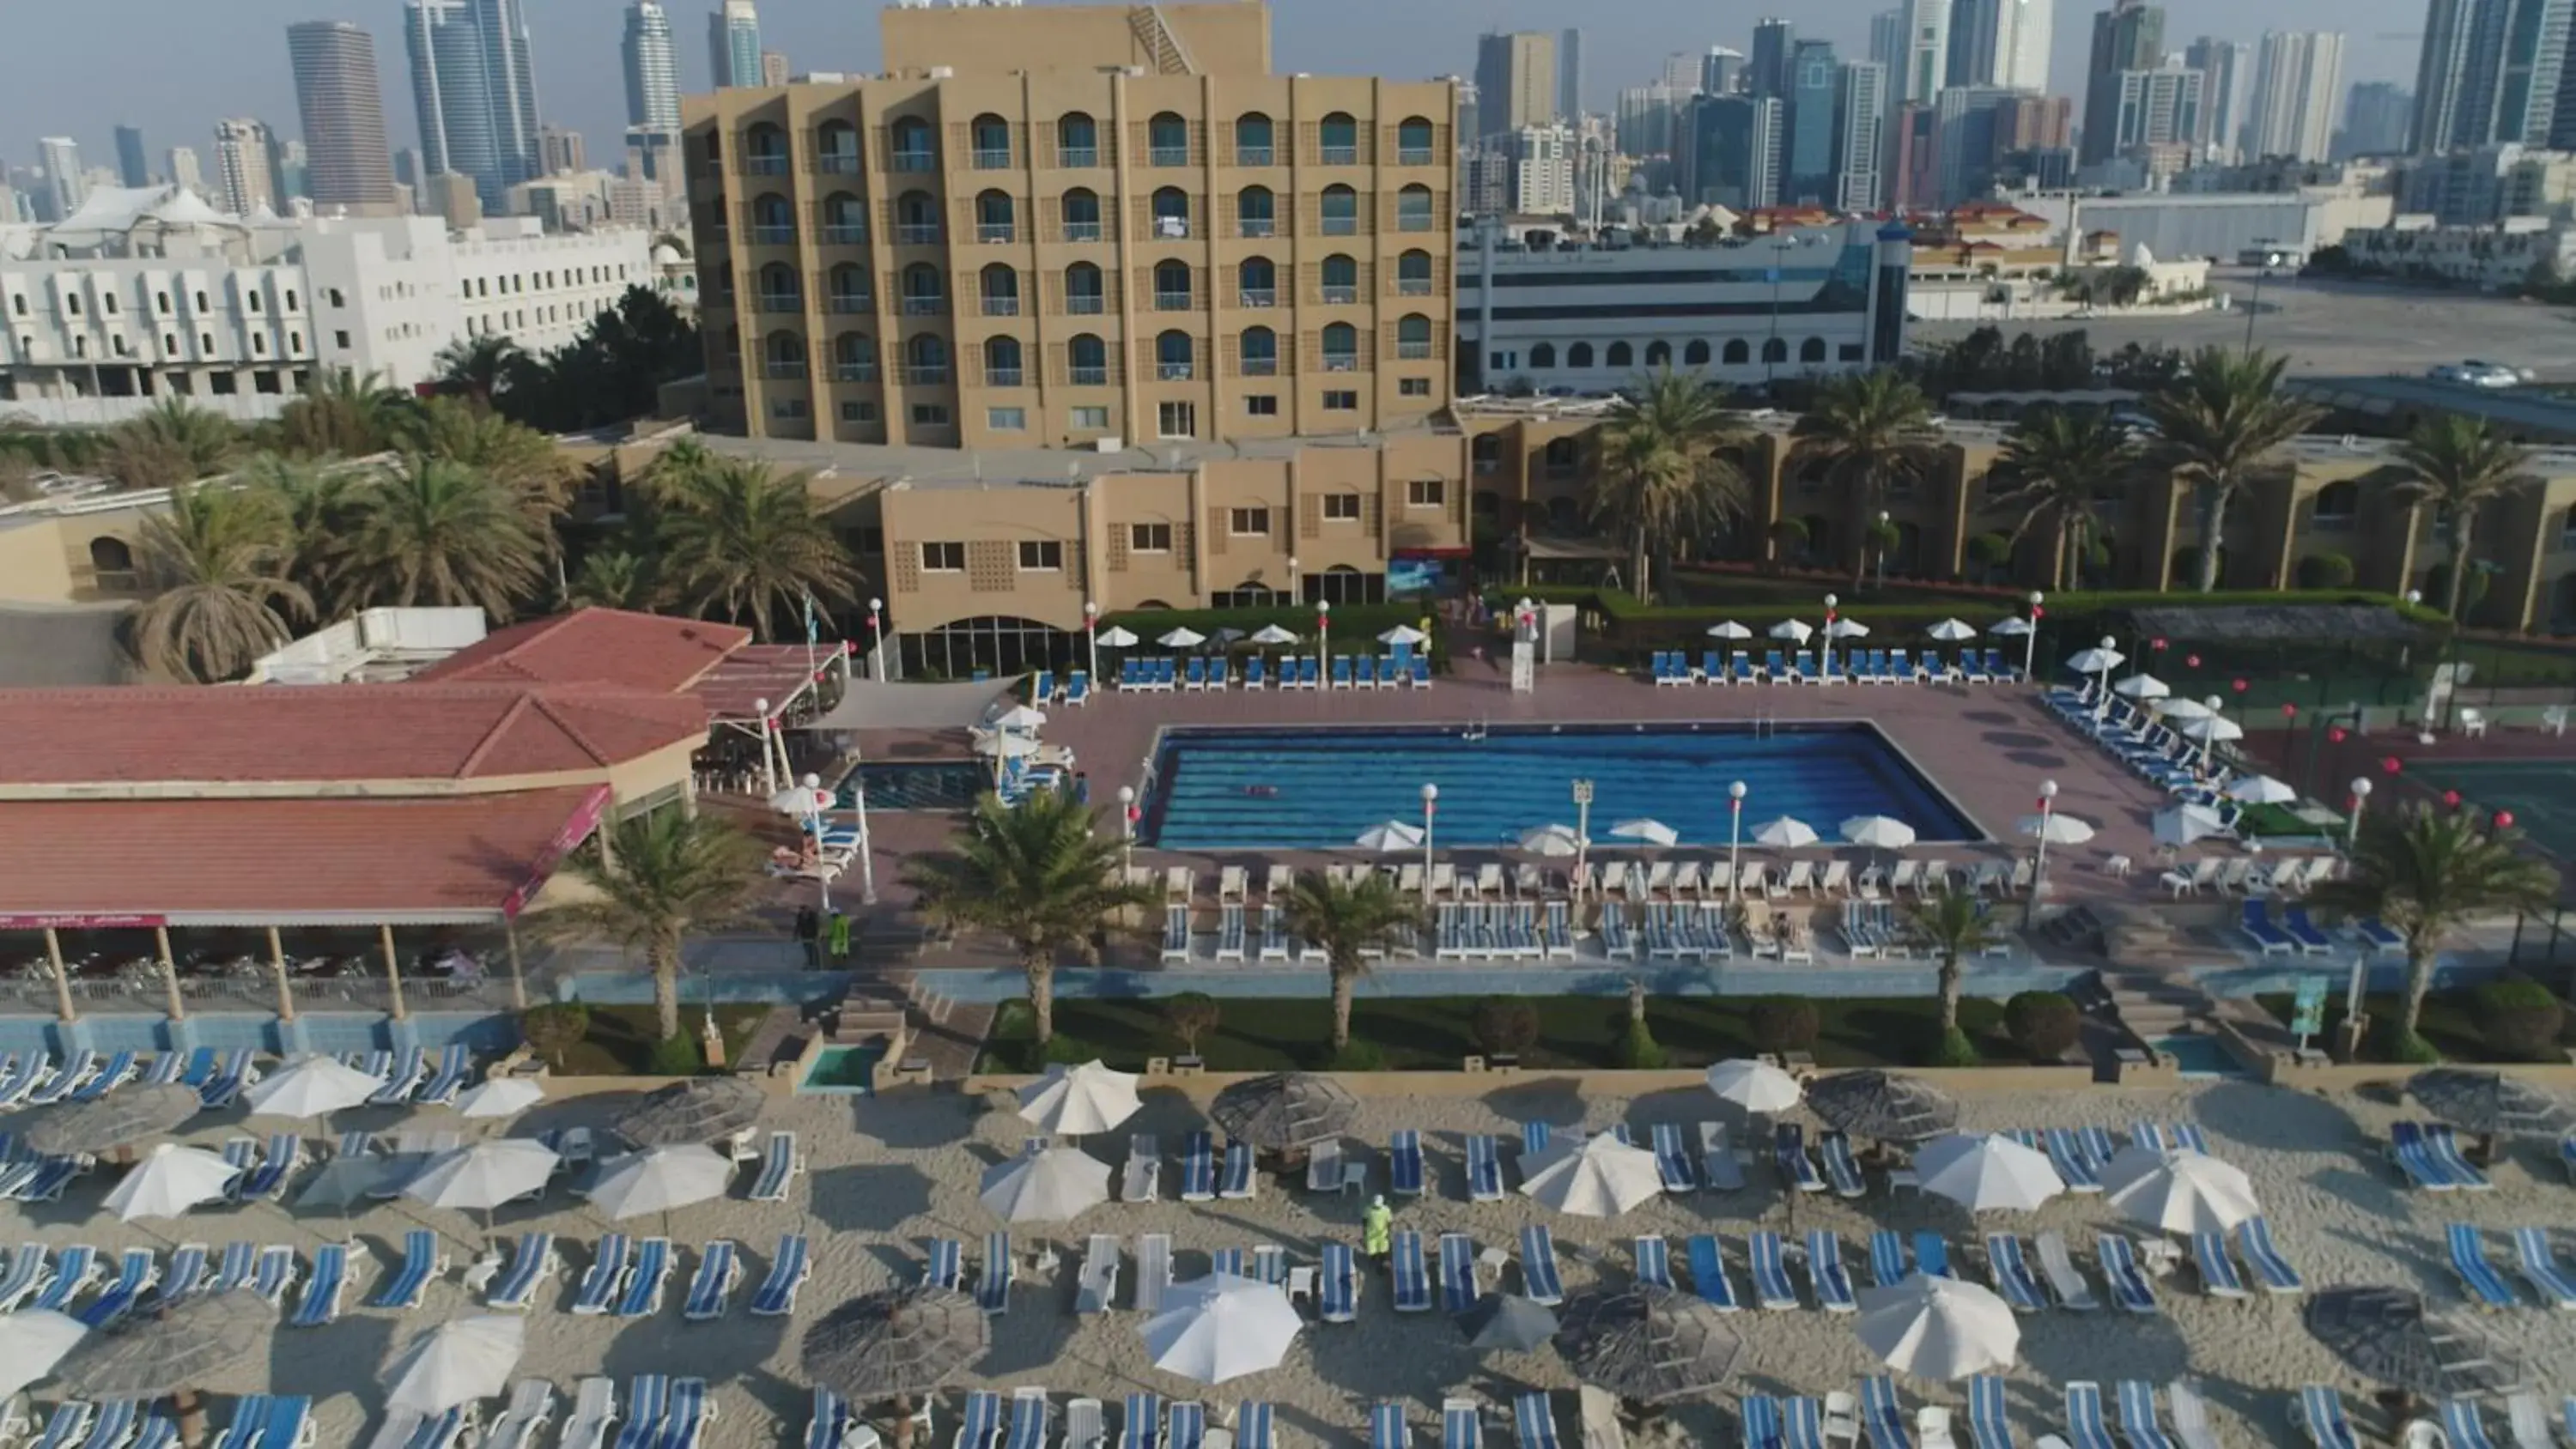 Bird's eye view in Sharjah Carlton Hotel